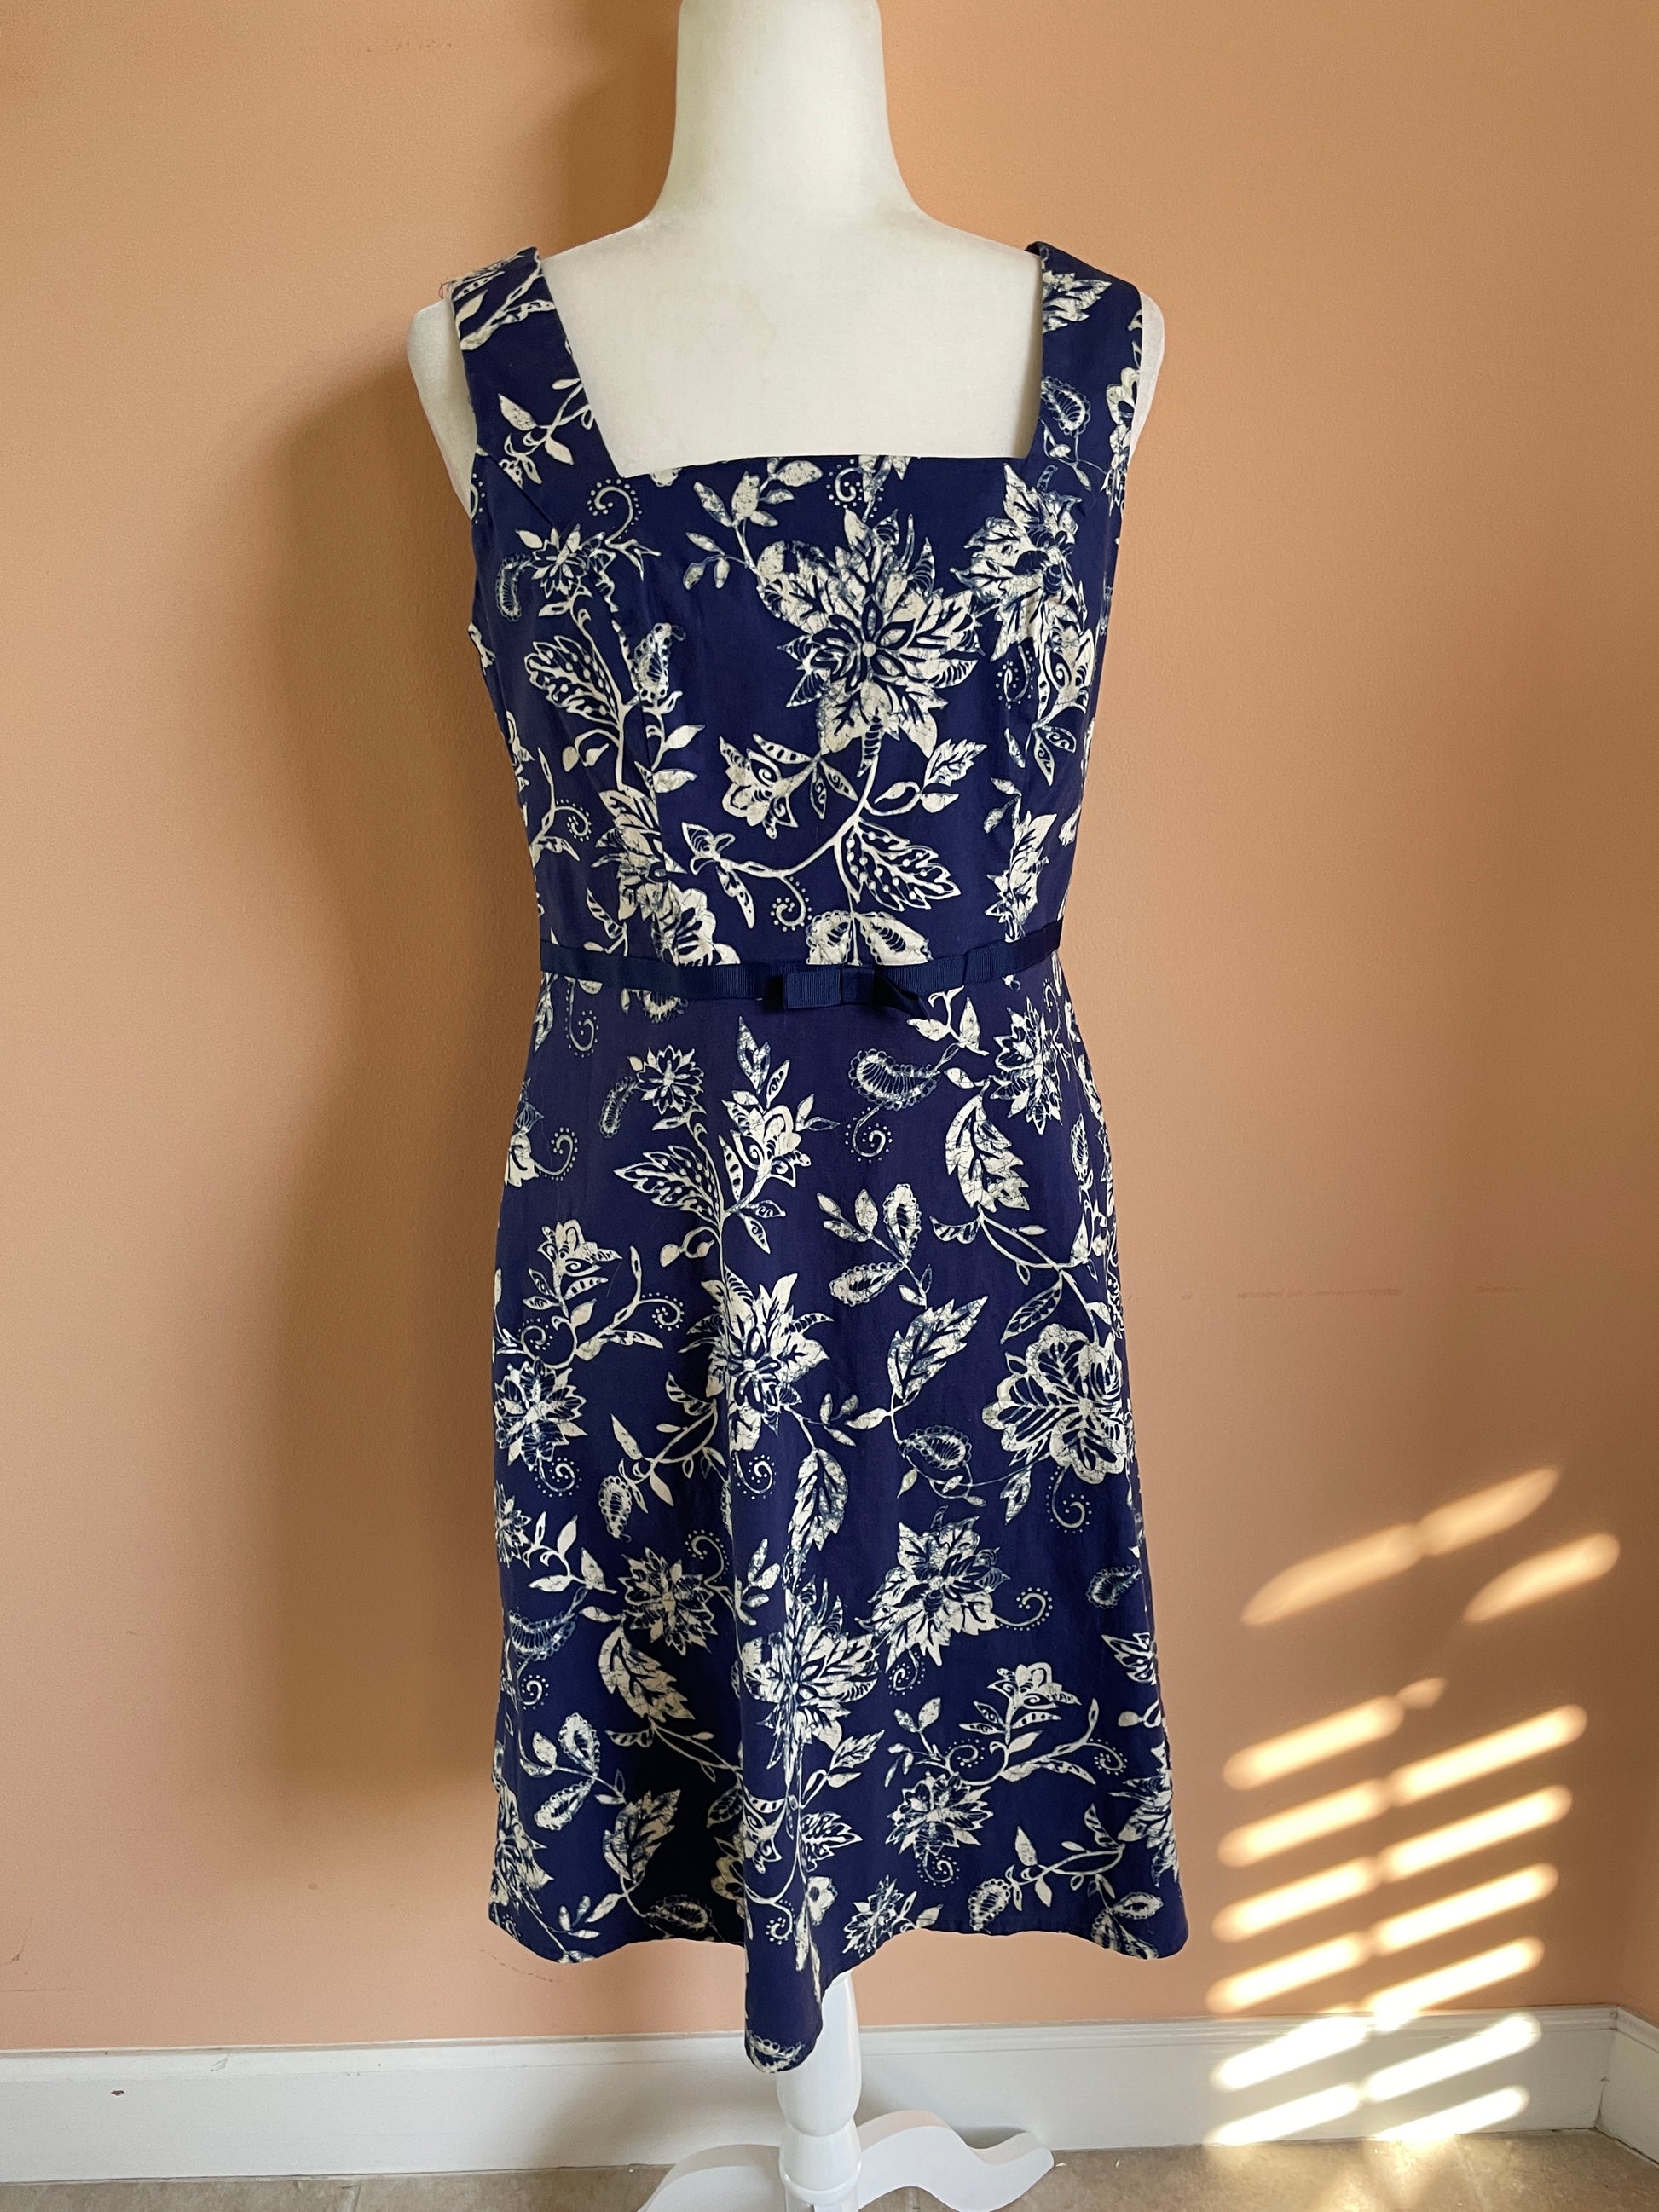 2000's blue summer dress 2000s Blue Summer Floral Cotton Sleeveless Dress